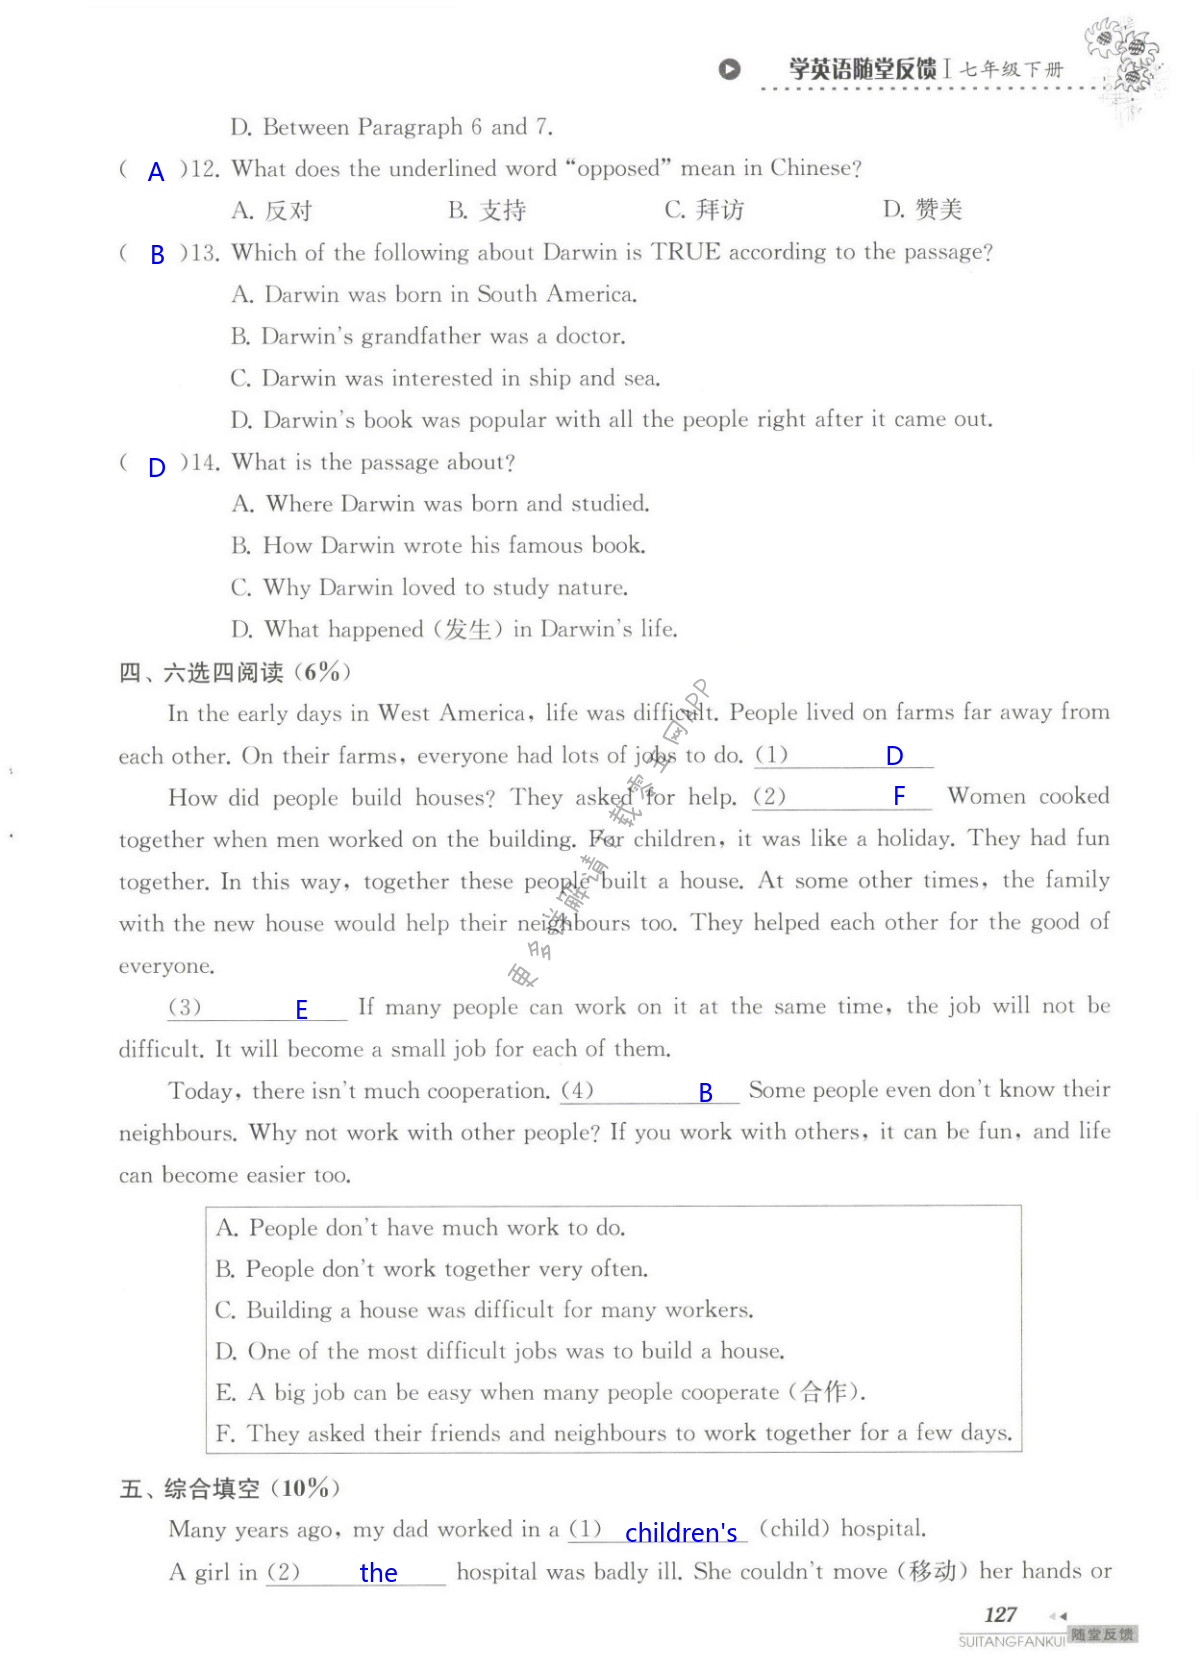 单元综合测试卷     Test for Unit 2 of 7B - 第127页